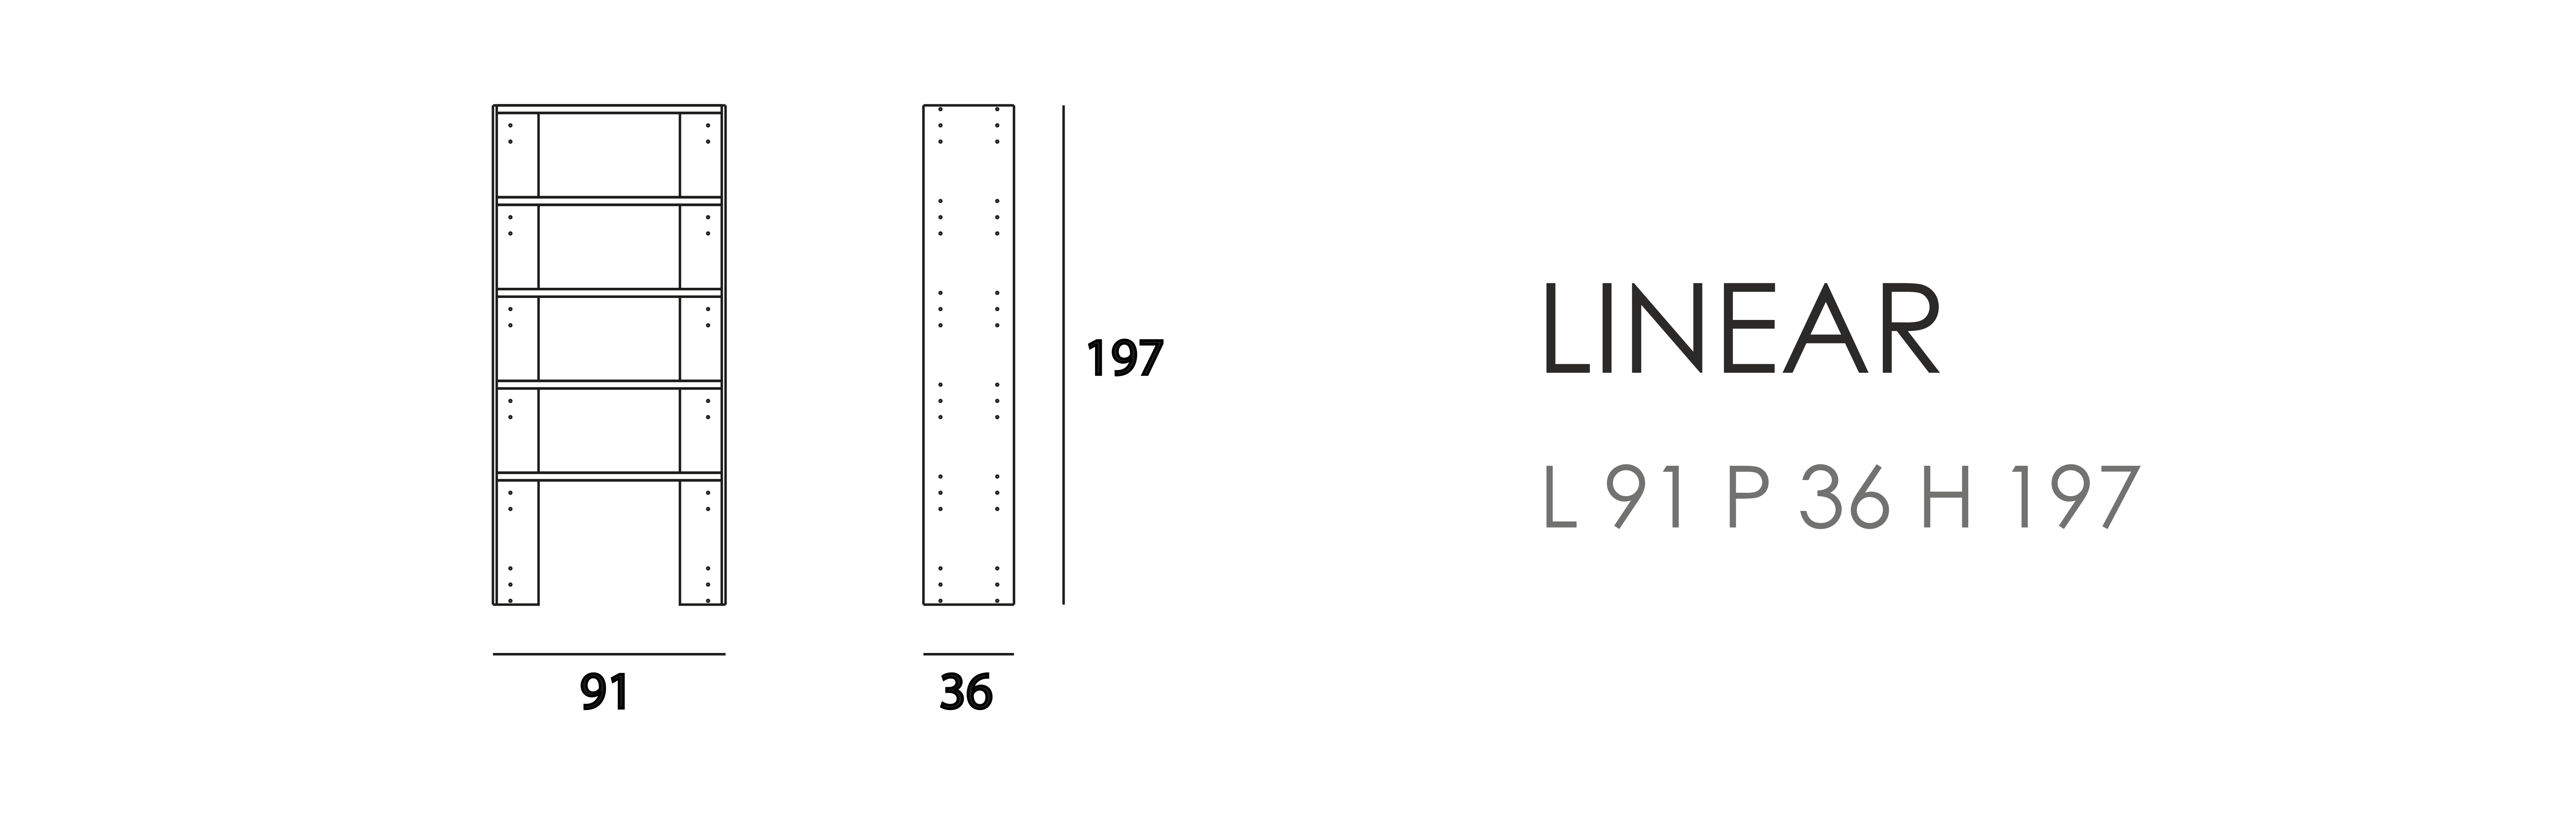 Linear L 91 P 36 H 197